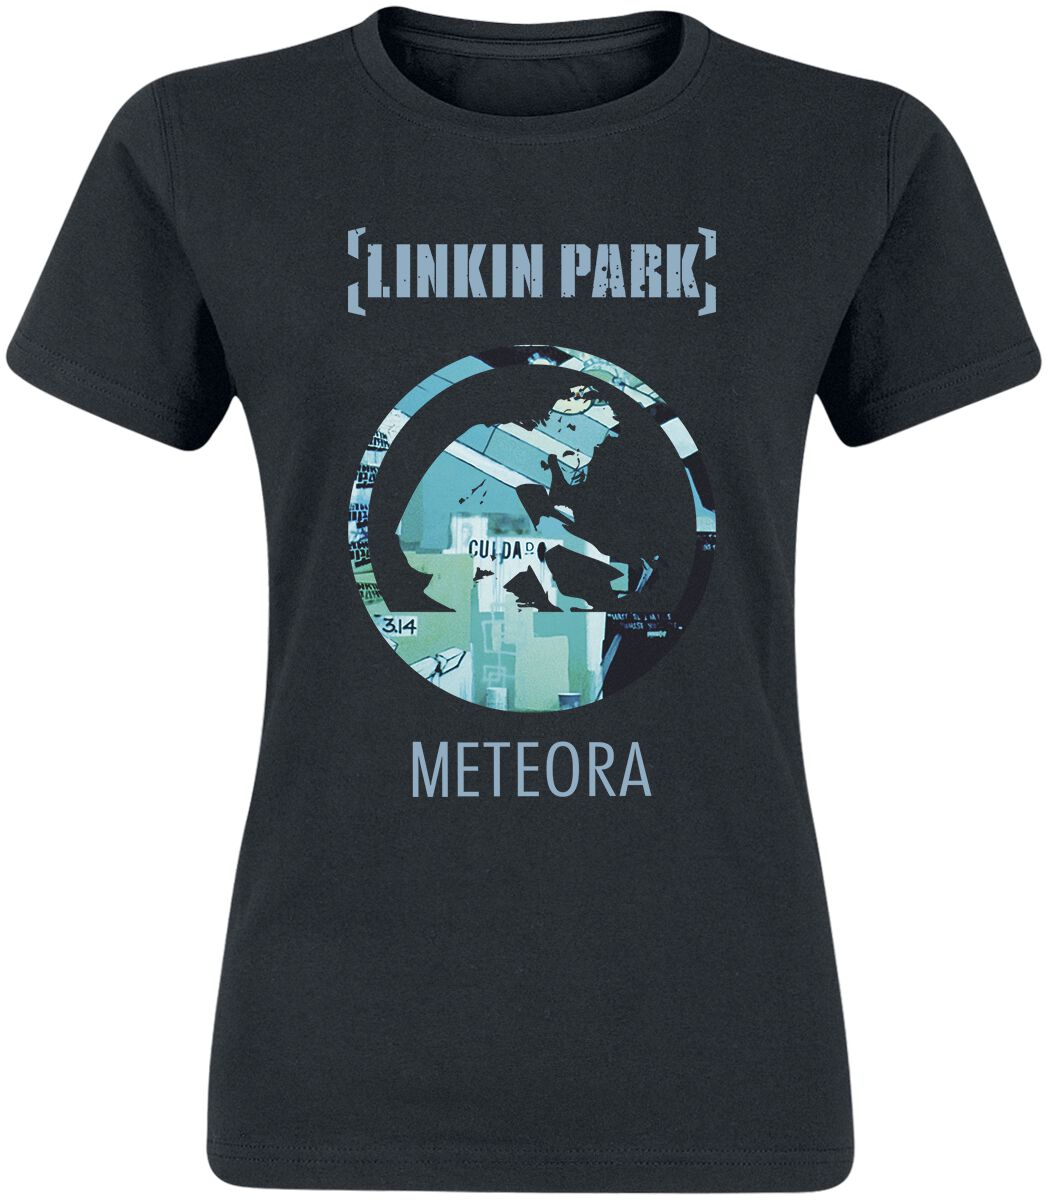 Linkin Park Meteora 20th Anniversary T-Shirt schwarz in XXL